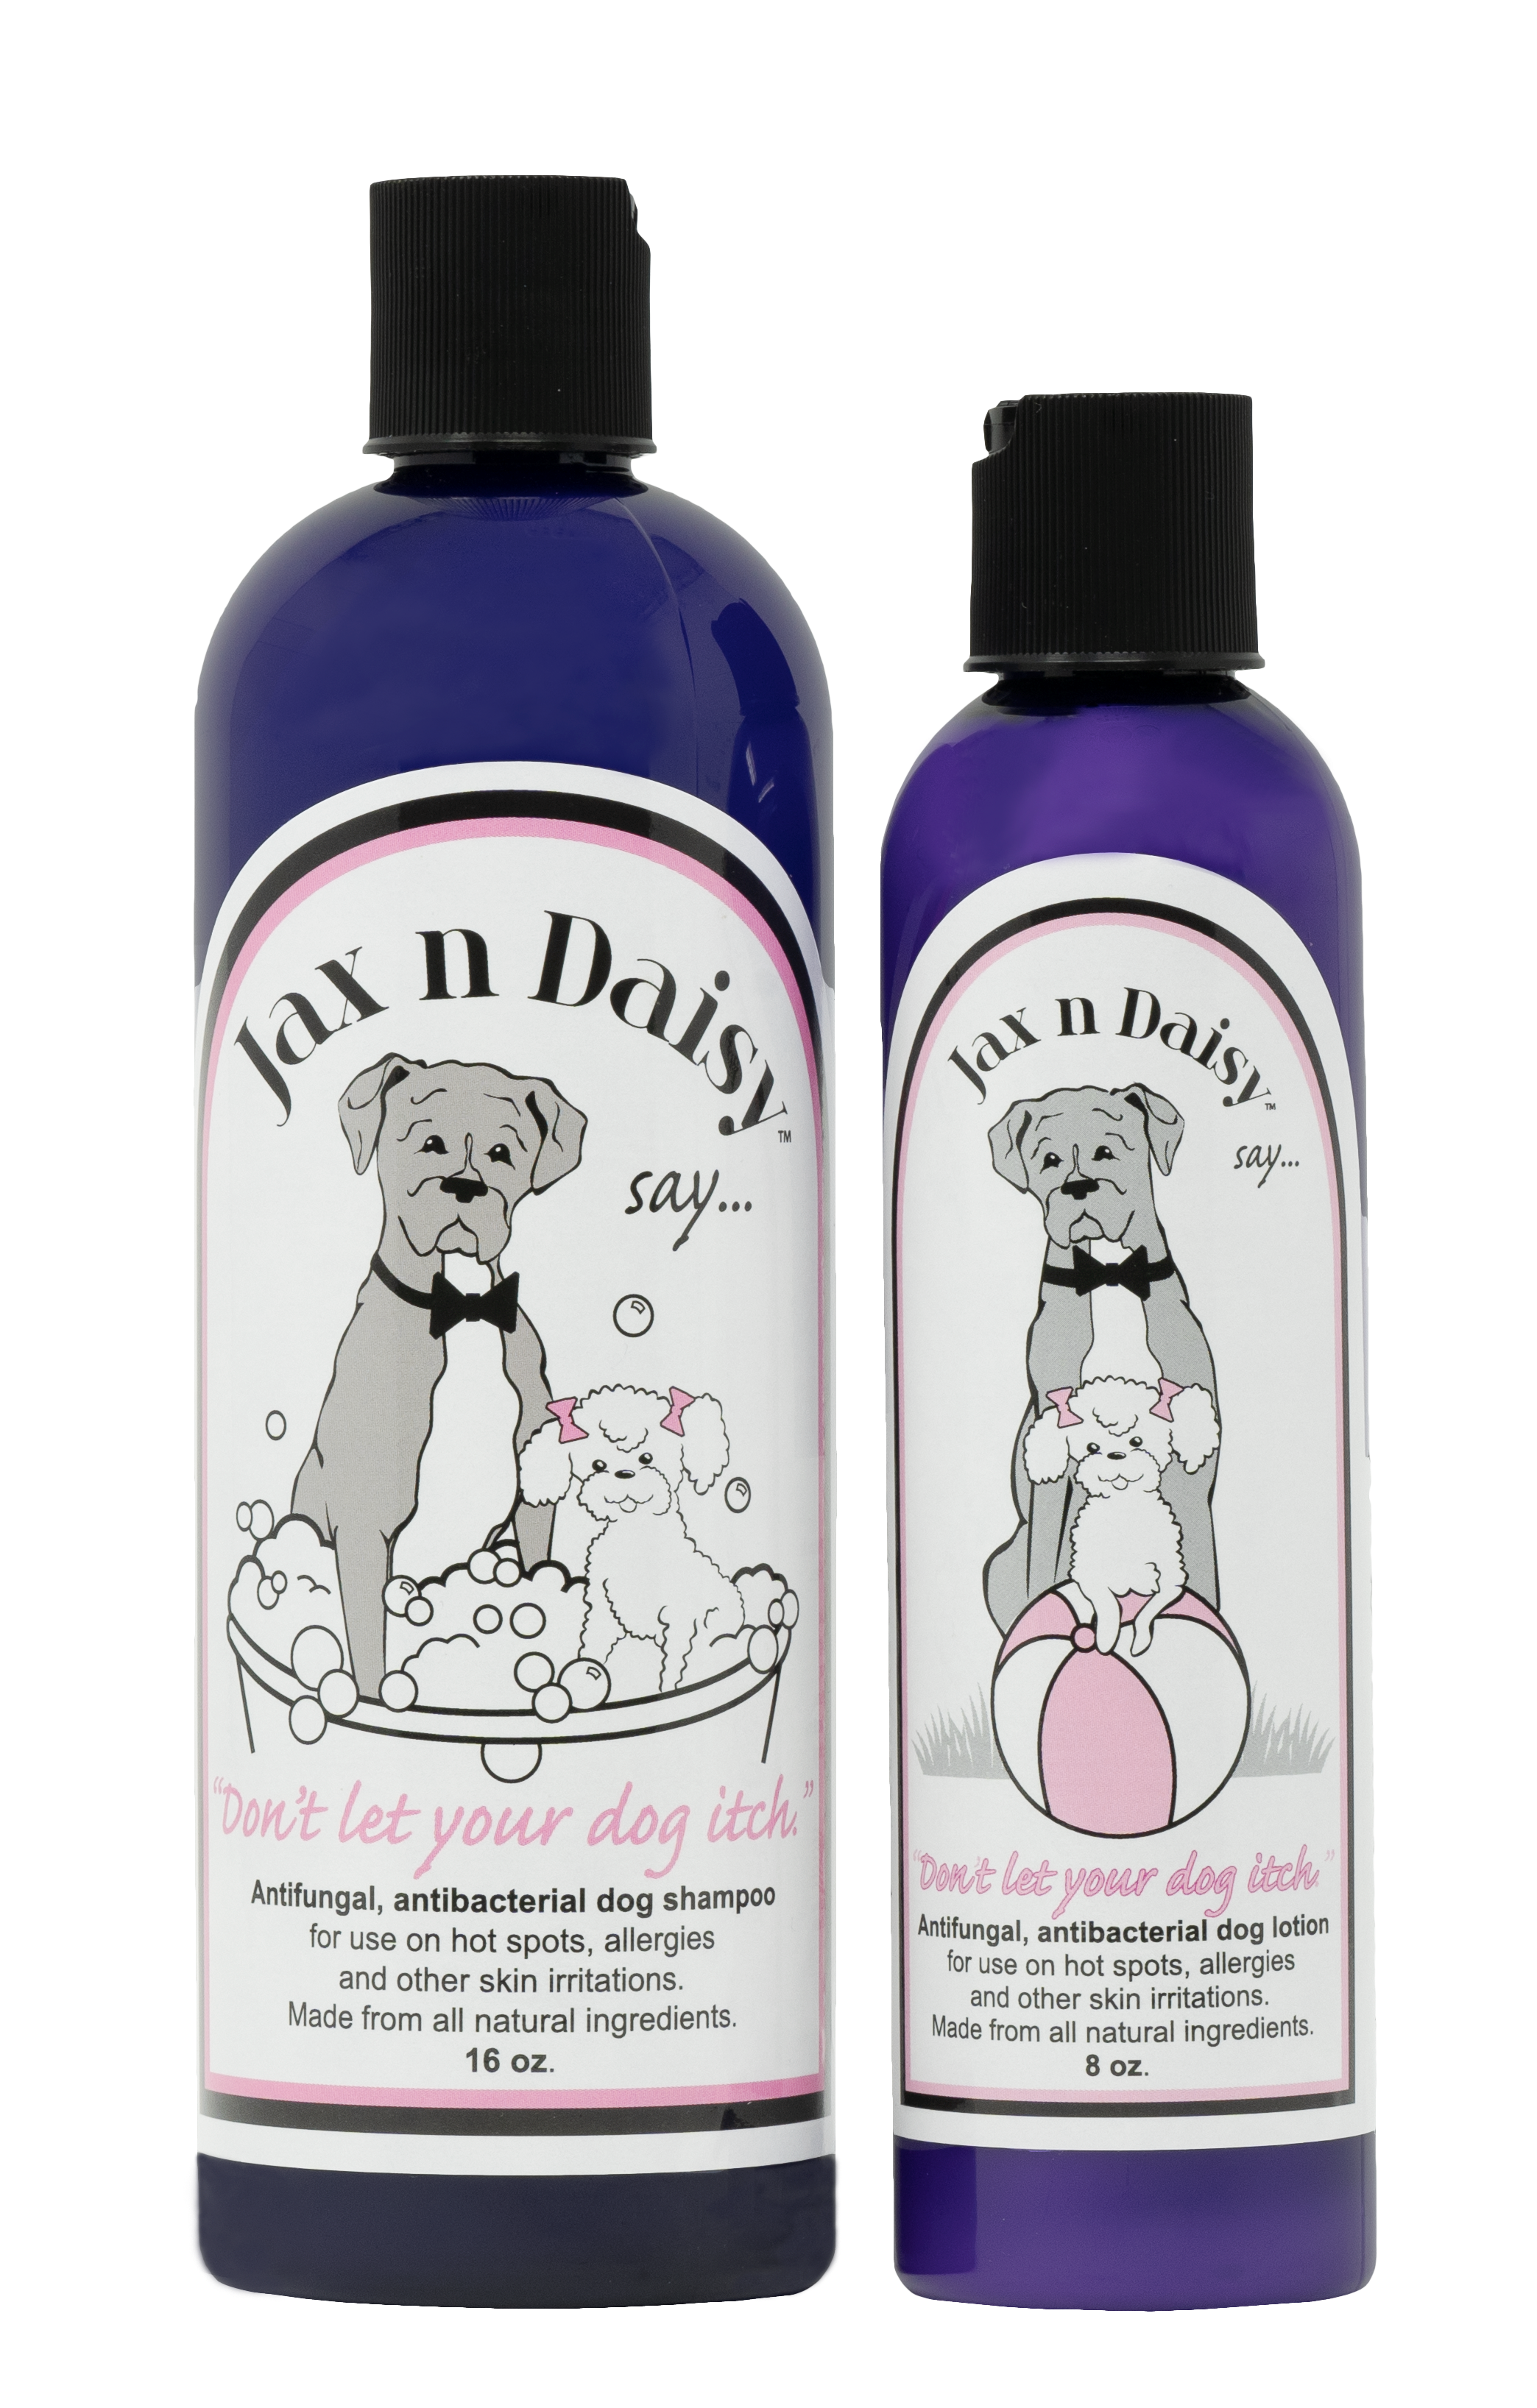 jax and daisy antifungal shampoo